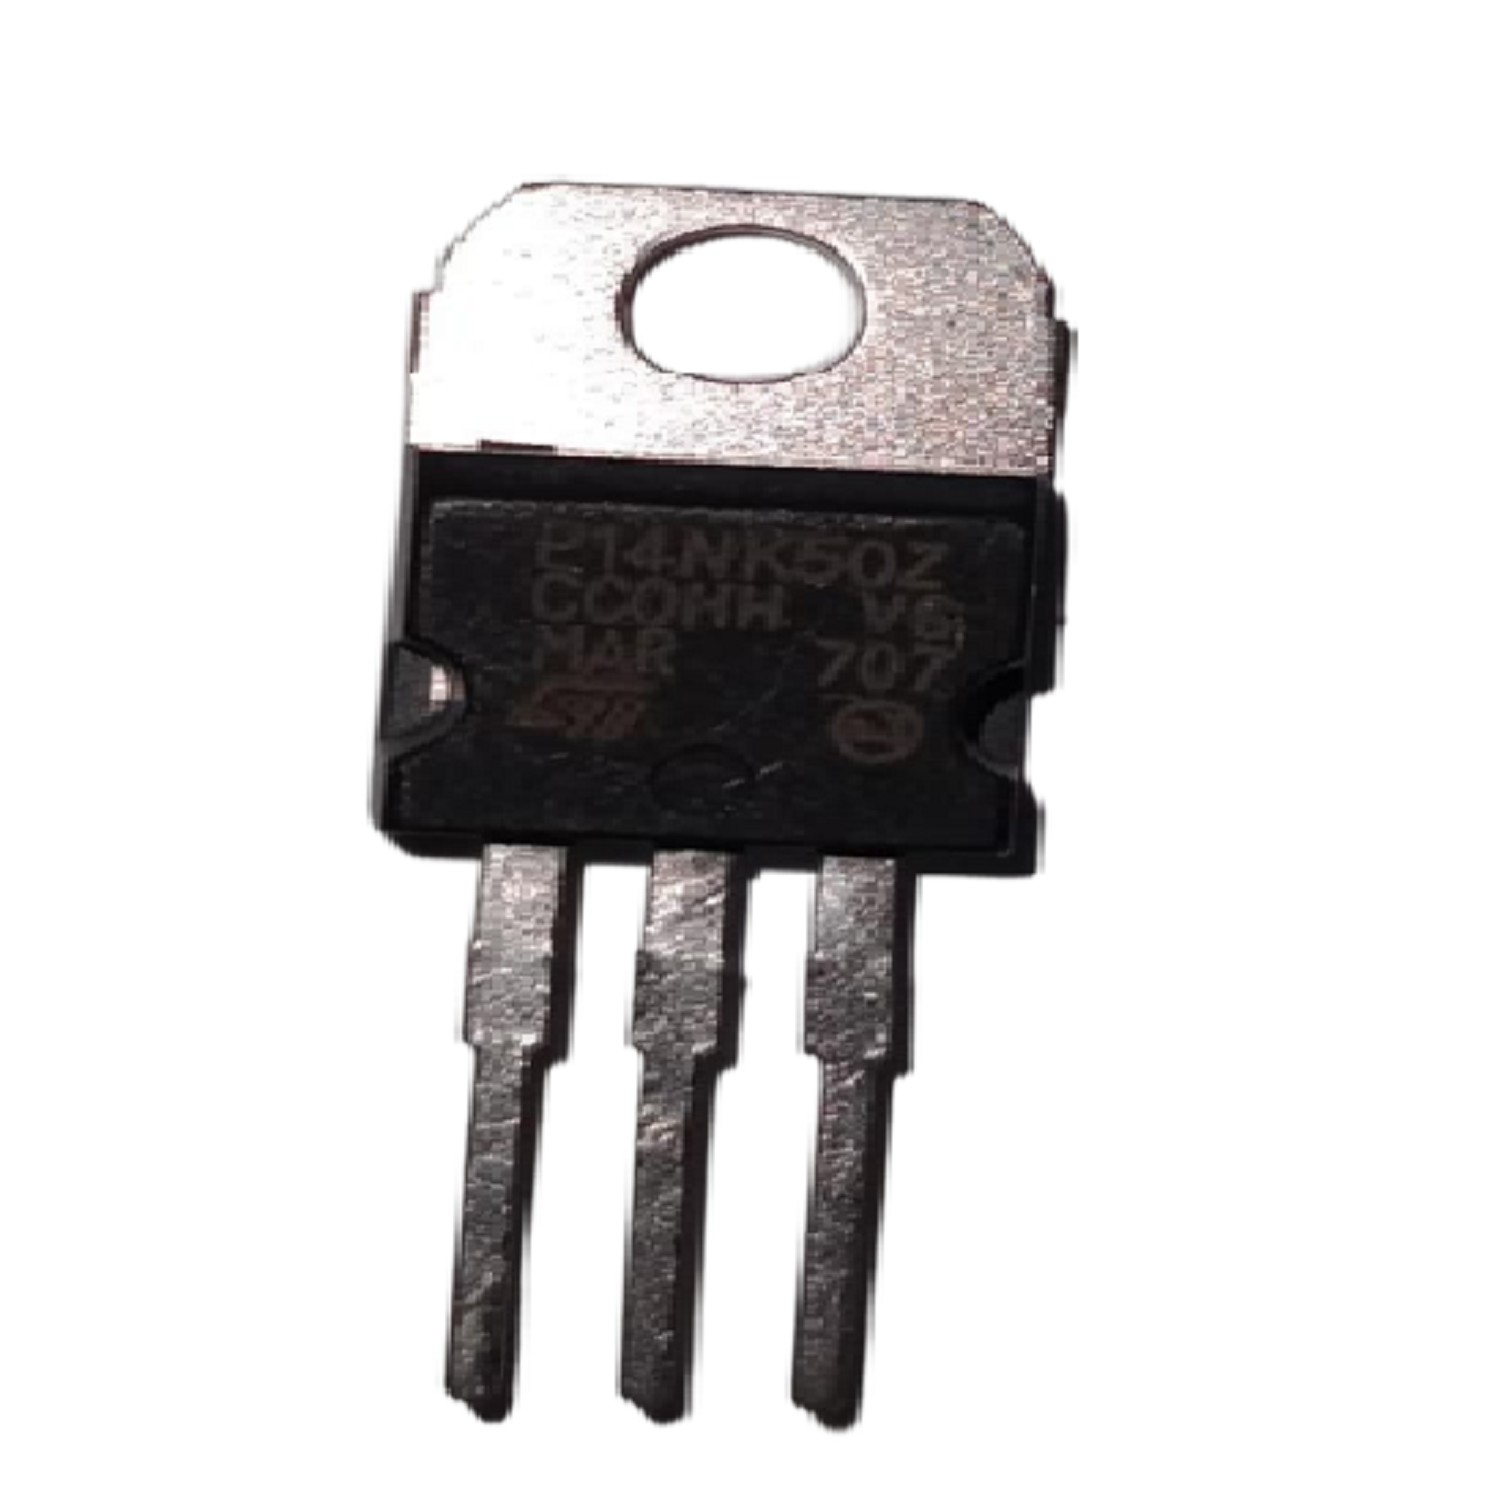 fet transistor for multiple leds